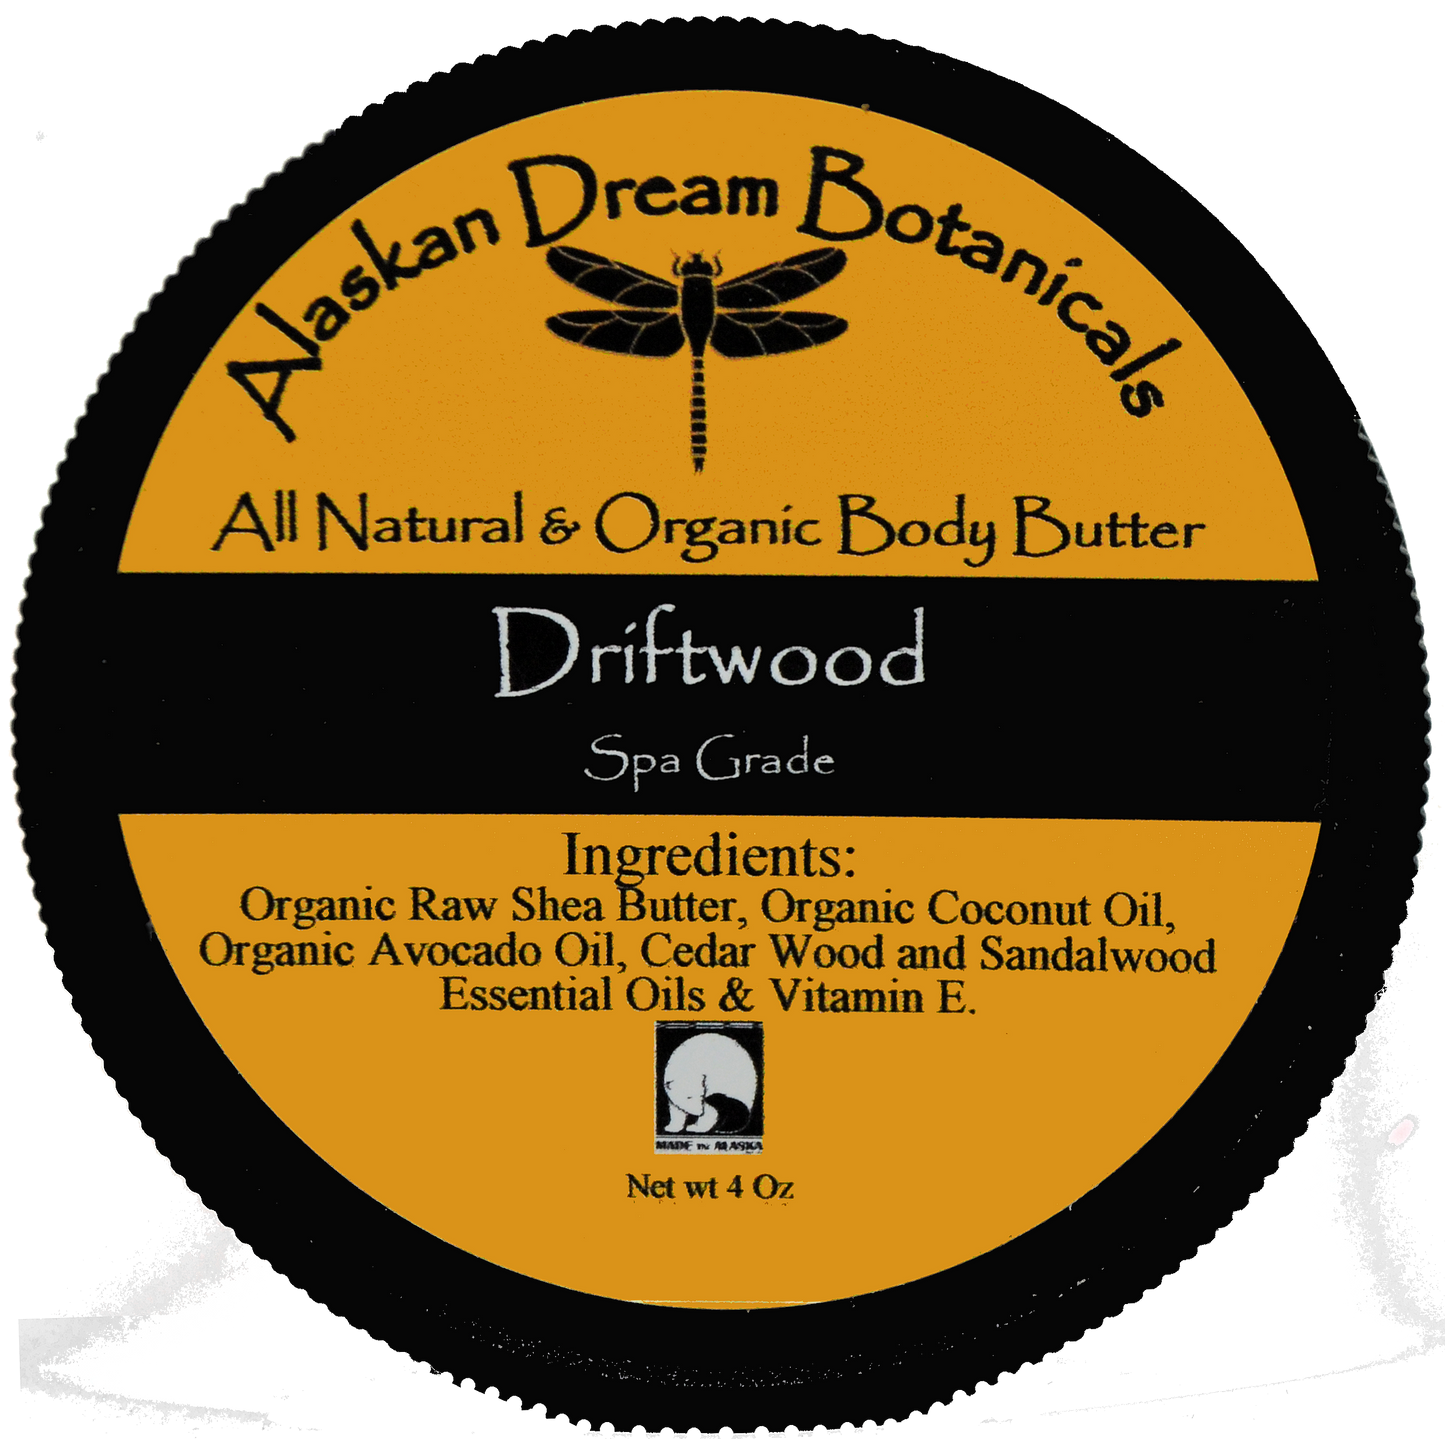 Driftwood Spa Grade Body Butter - Alaskan Dream Botanicals